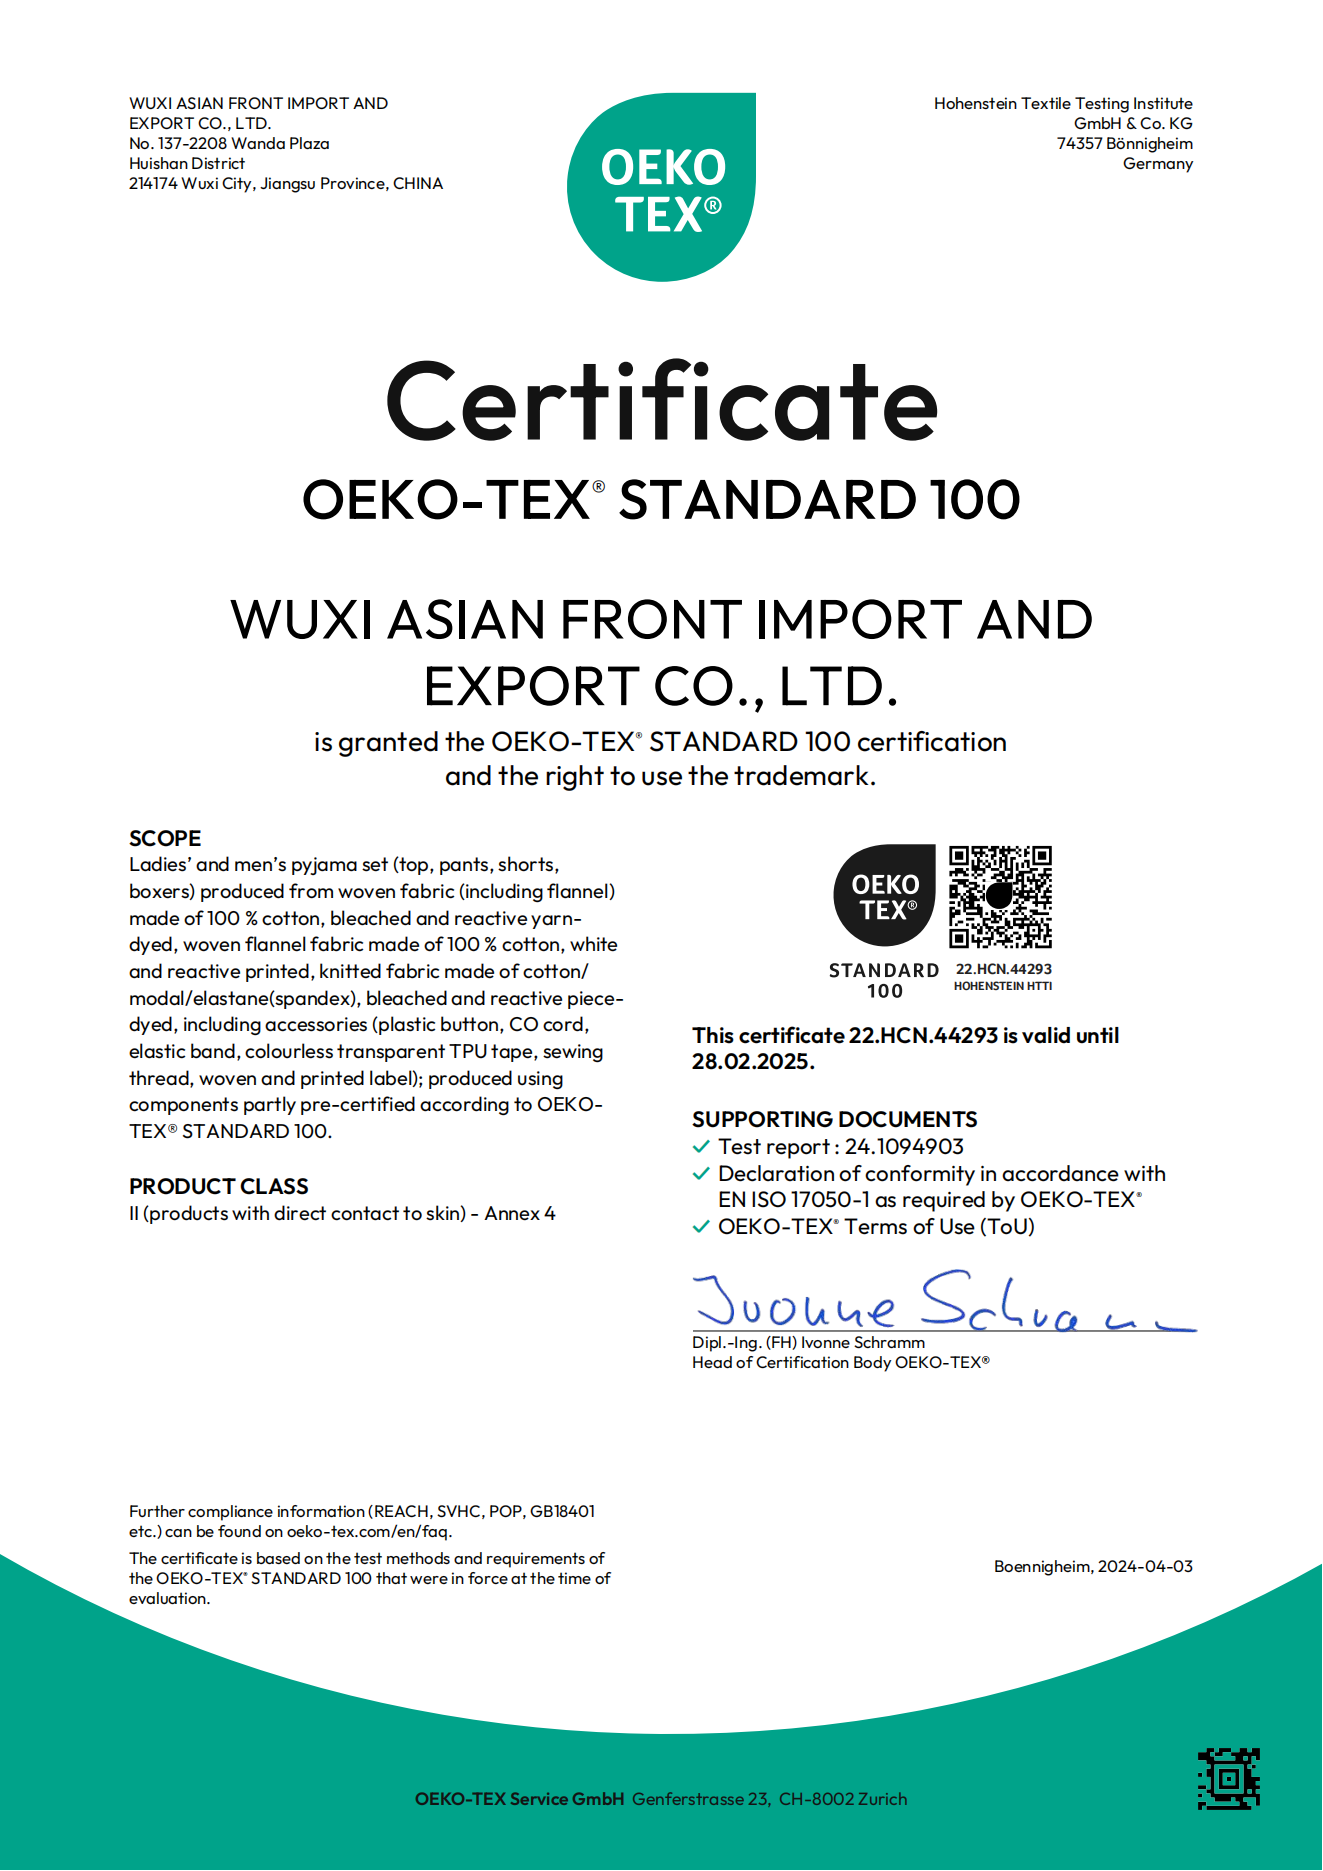 New Oeko-tex certificate